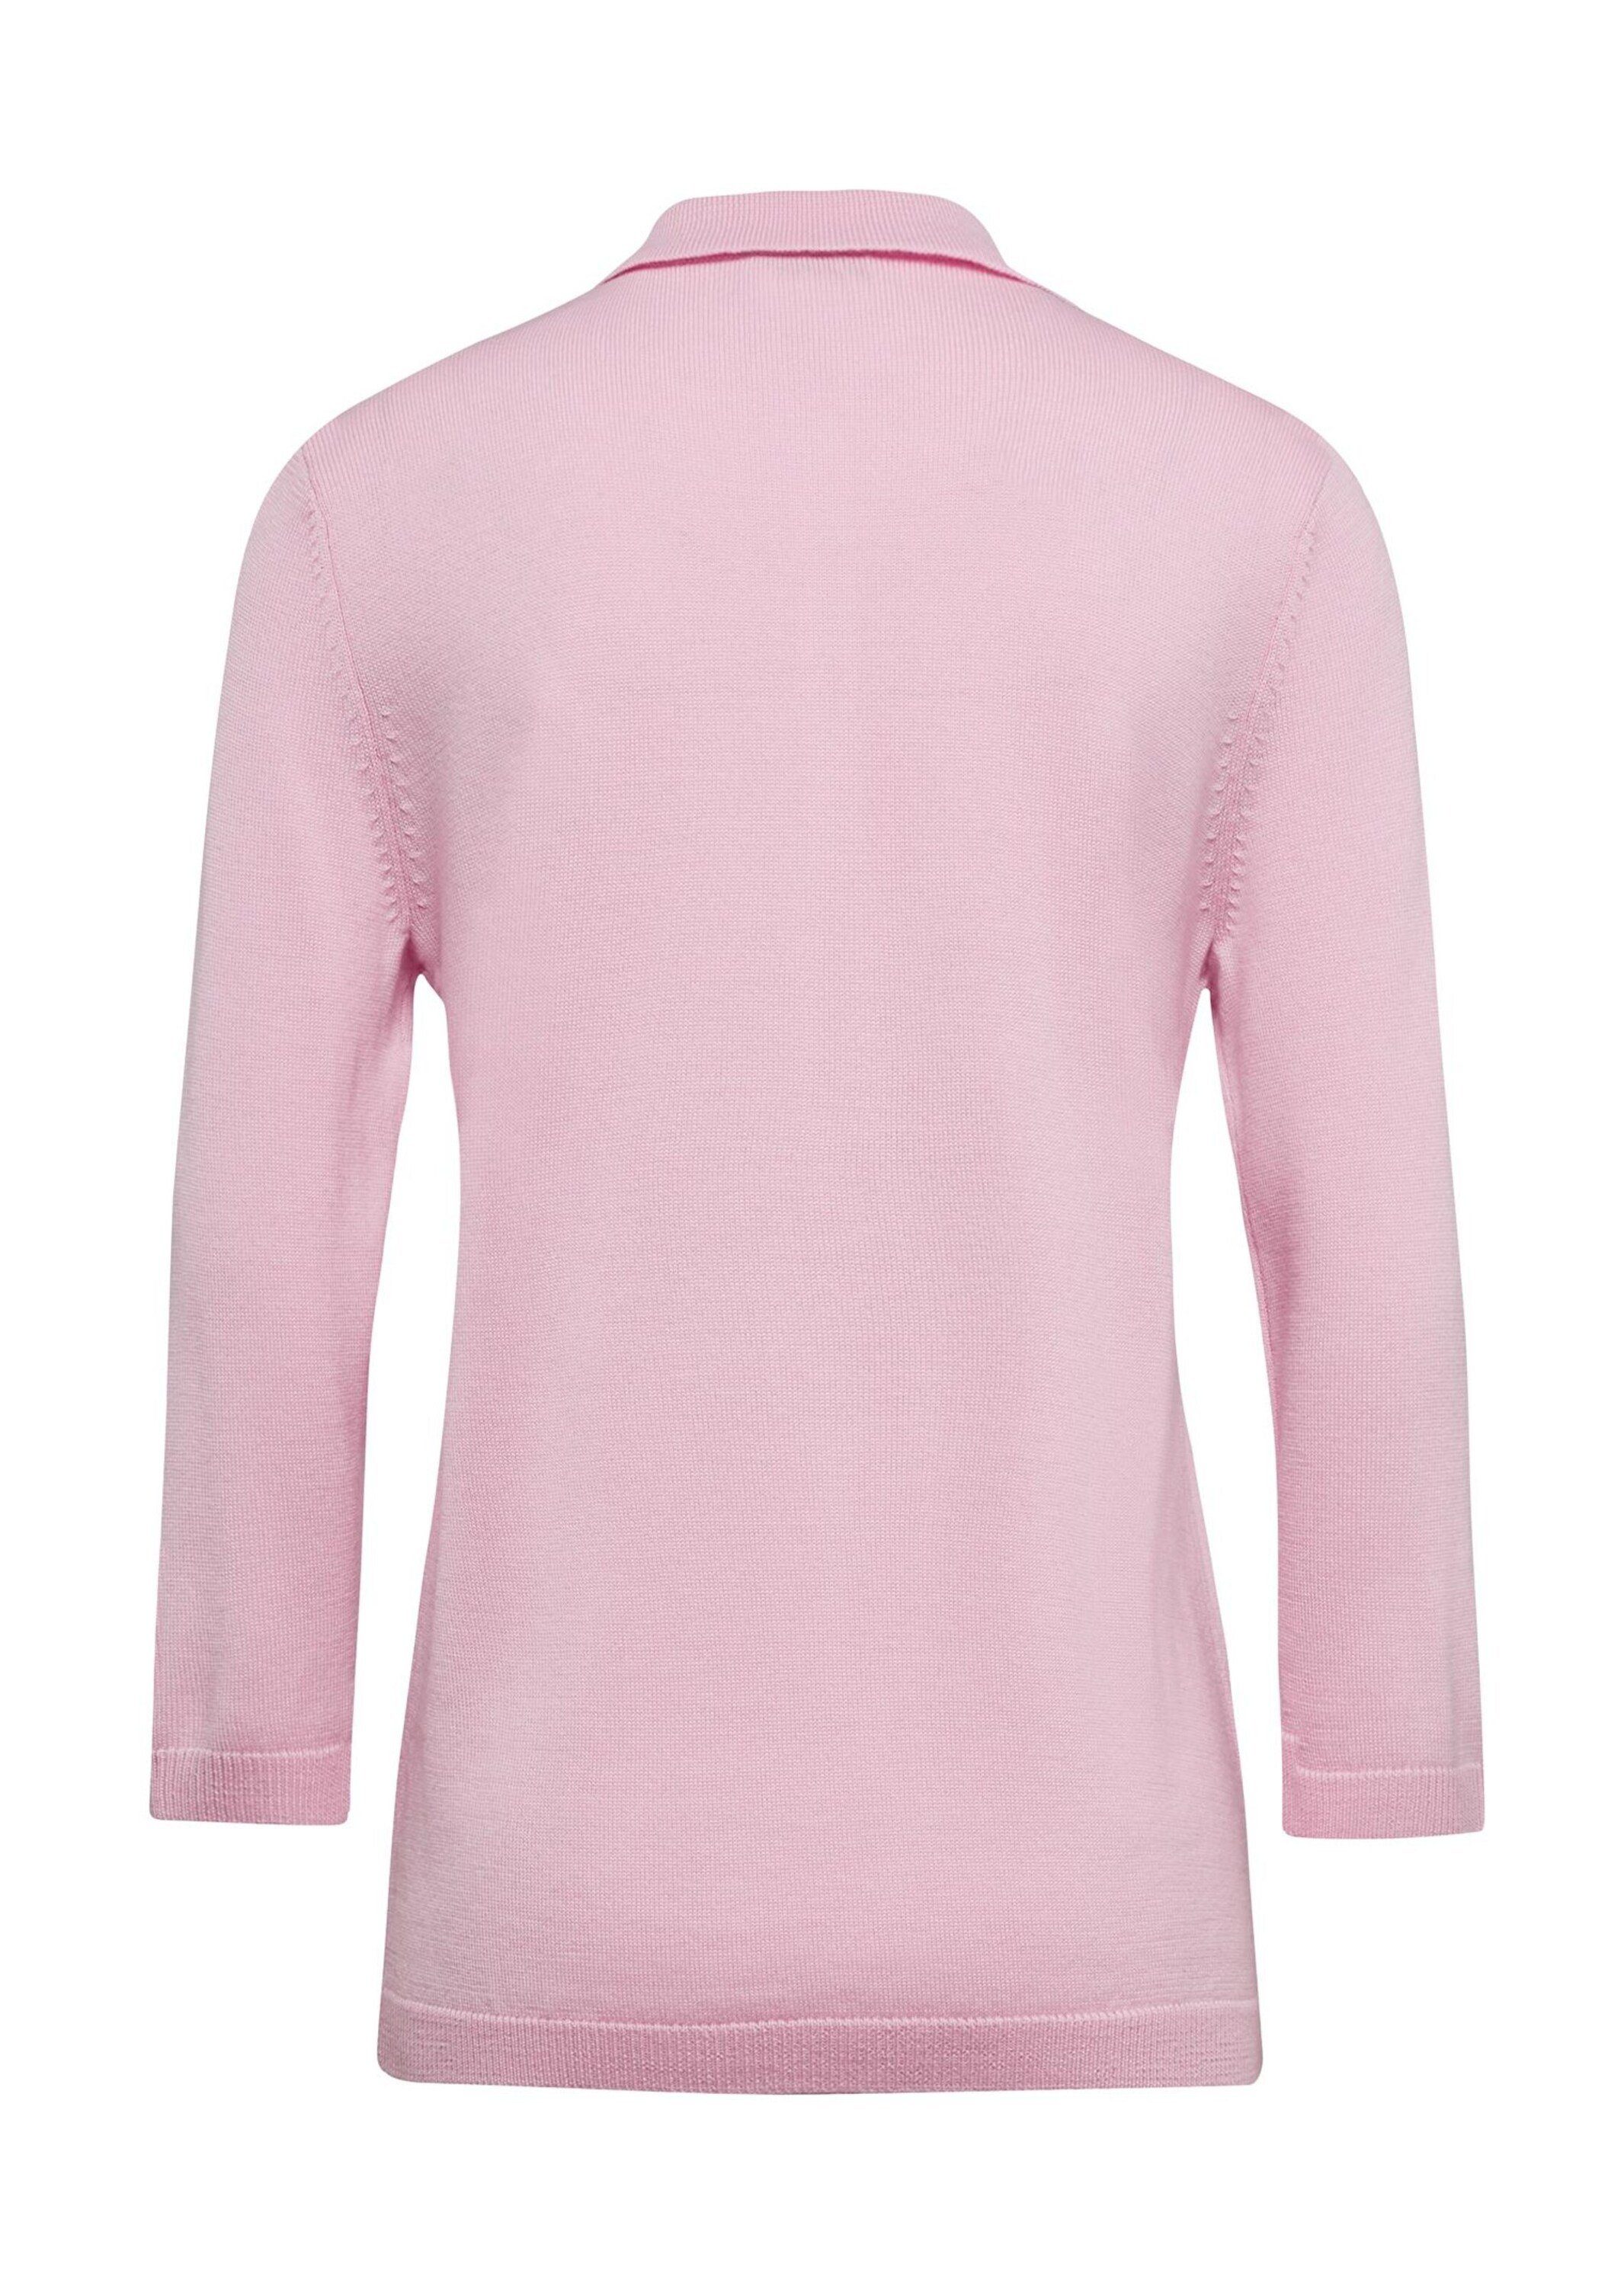 rosa in Strickpullover Qualität Pullover hochwertiger GOLDNER